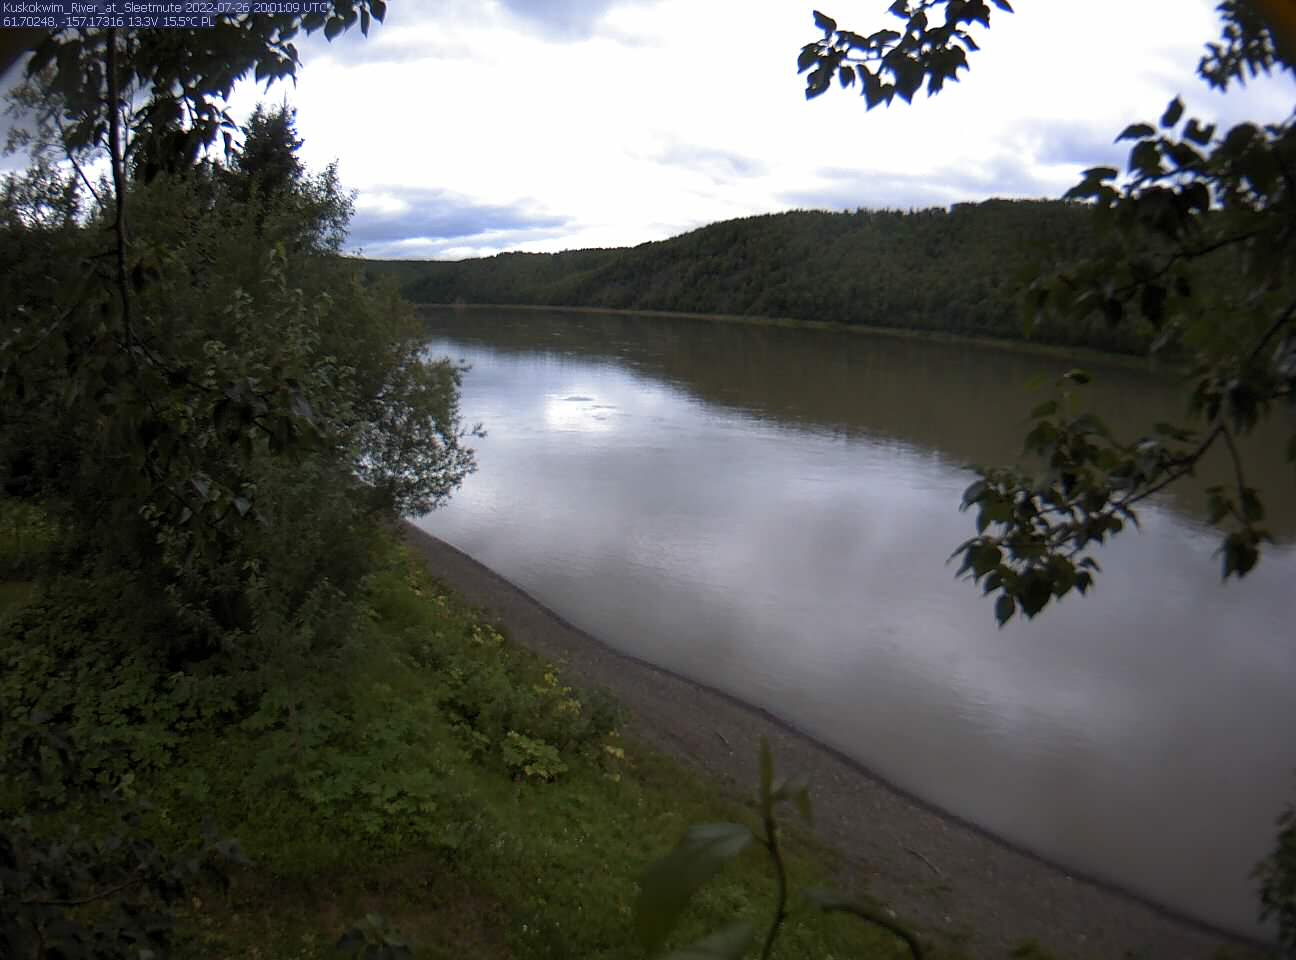 Kuskokwim_River_at_Sleetmute_20220726200111.jpg